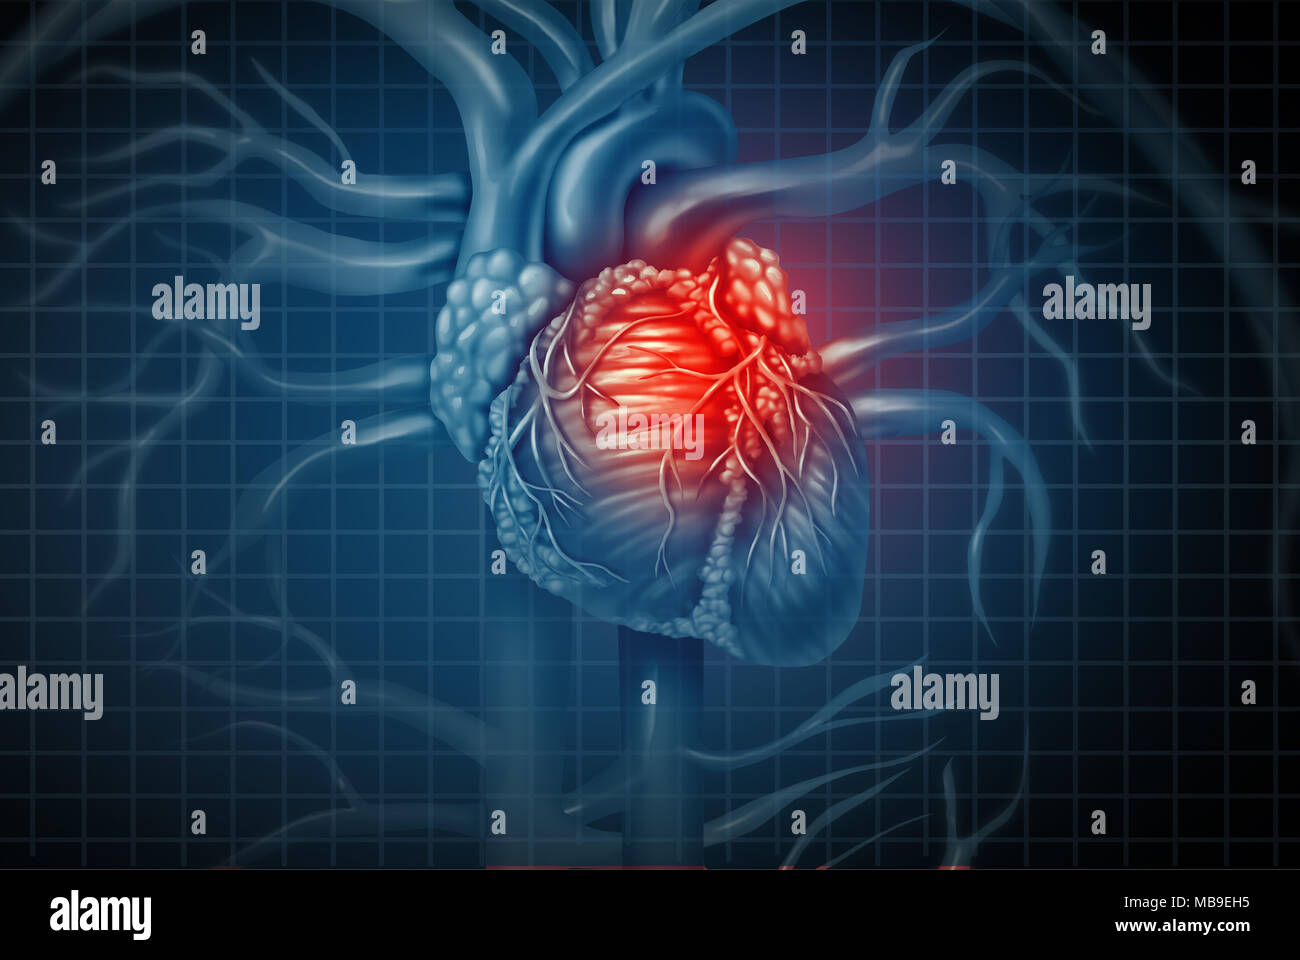 Herzinfarkt Schmerz als menschliche Herz-Kreislauf-Orgel mit einer schmerzhaften Entzündung des Herzens mit 3D-Illustration Elemente. Stockfoto